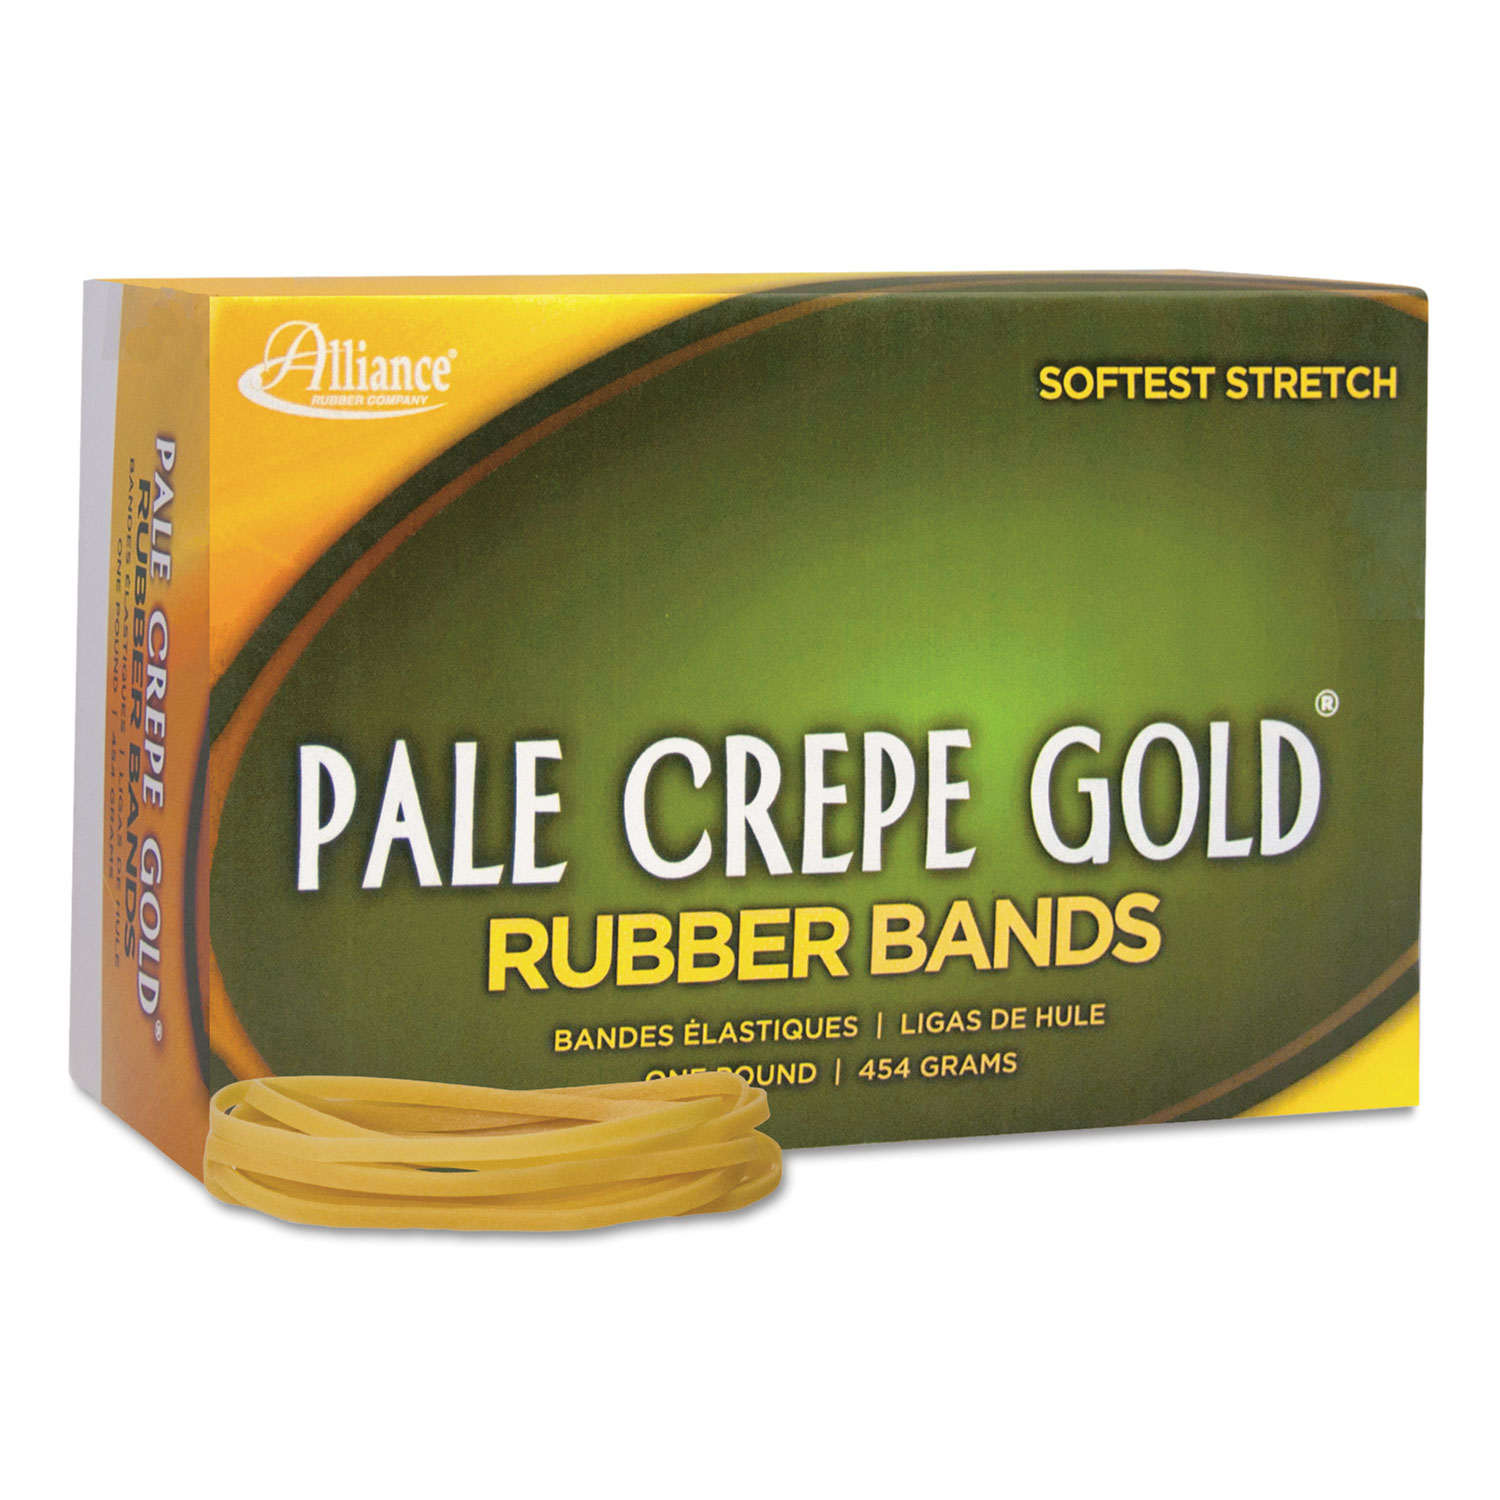 Pale Crepe Gold Rubber Bands, Sz. 33, 3-1/2 x 1/8, 1lb Box